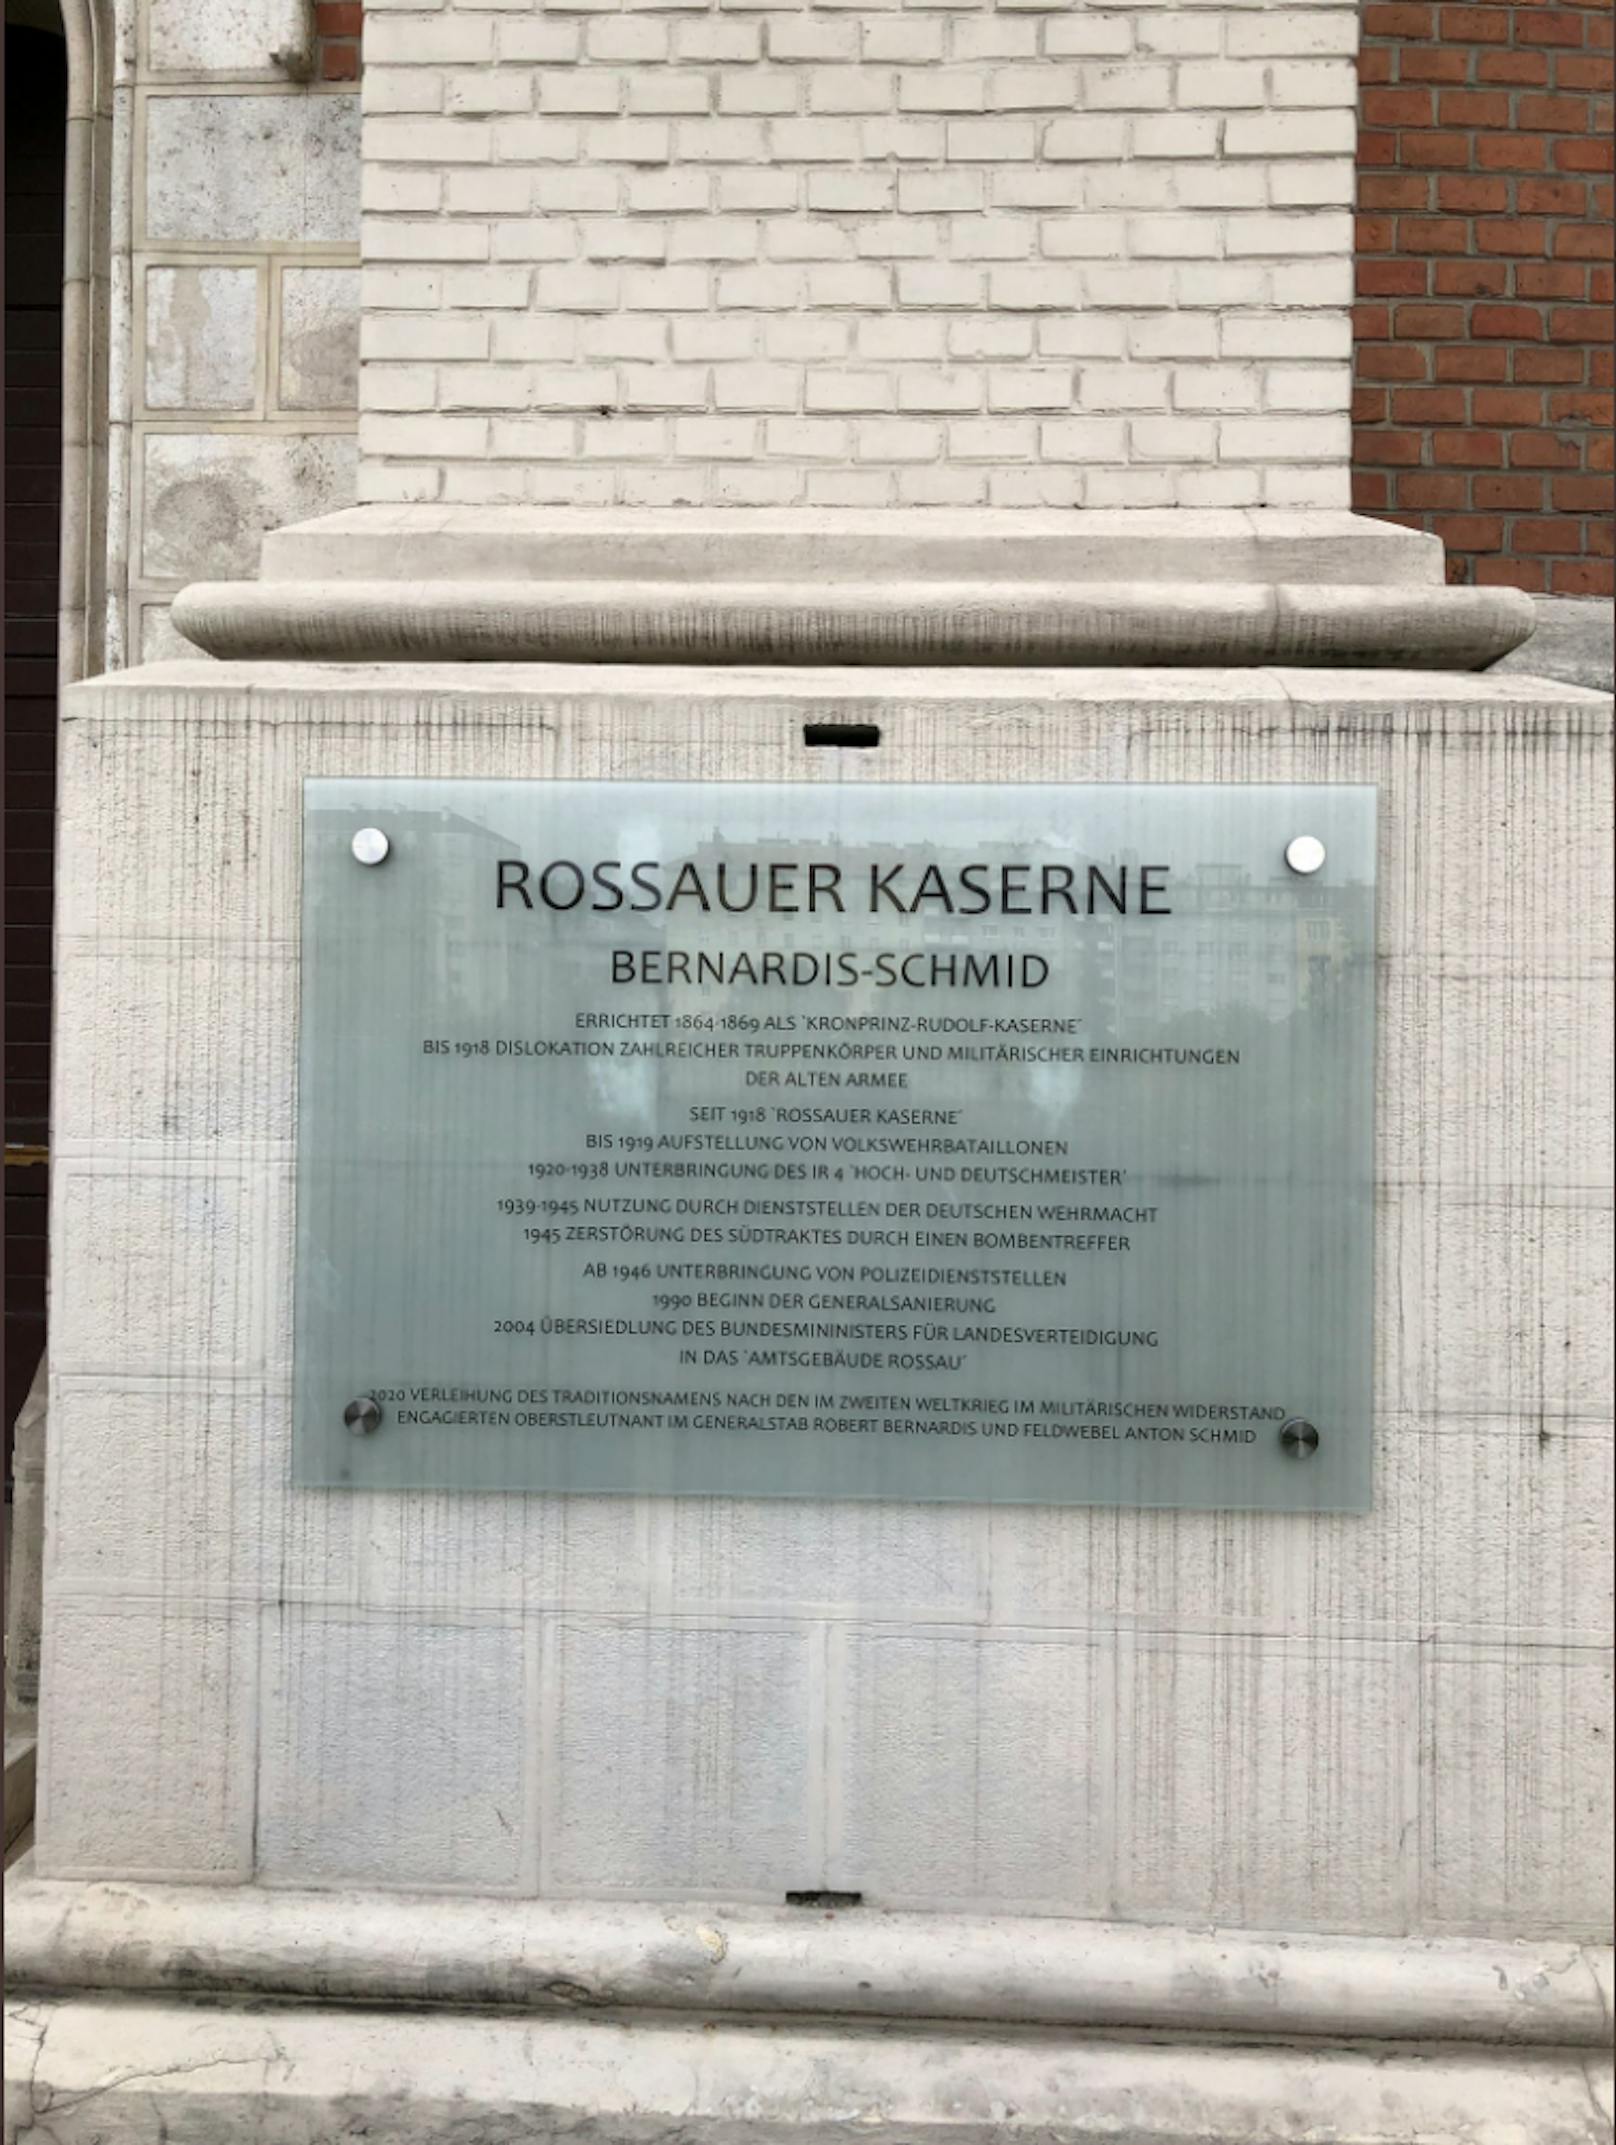 Ein Schreibfehler an einer Info-Tafel an der Rossauer Kaserne (Alsergrund) sorgt bei aufmerksamen Lesern für Schmunzeln.